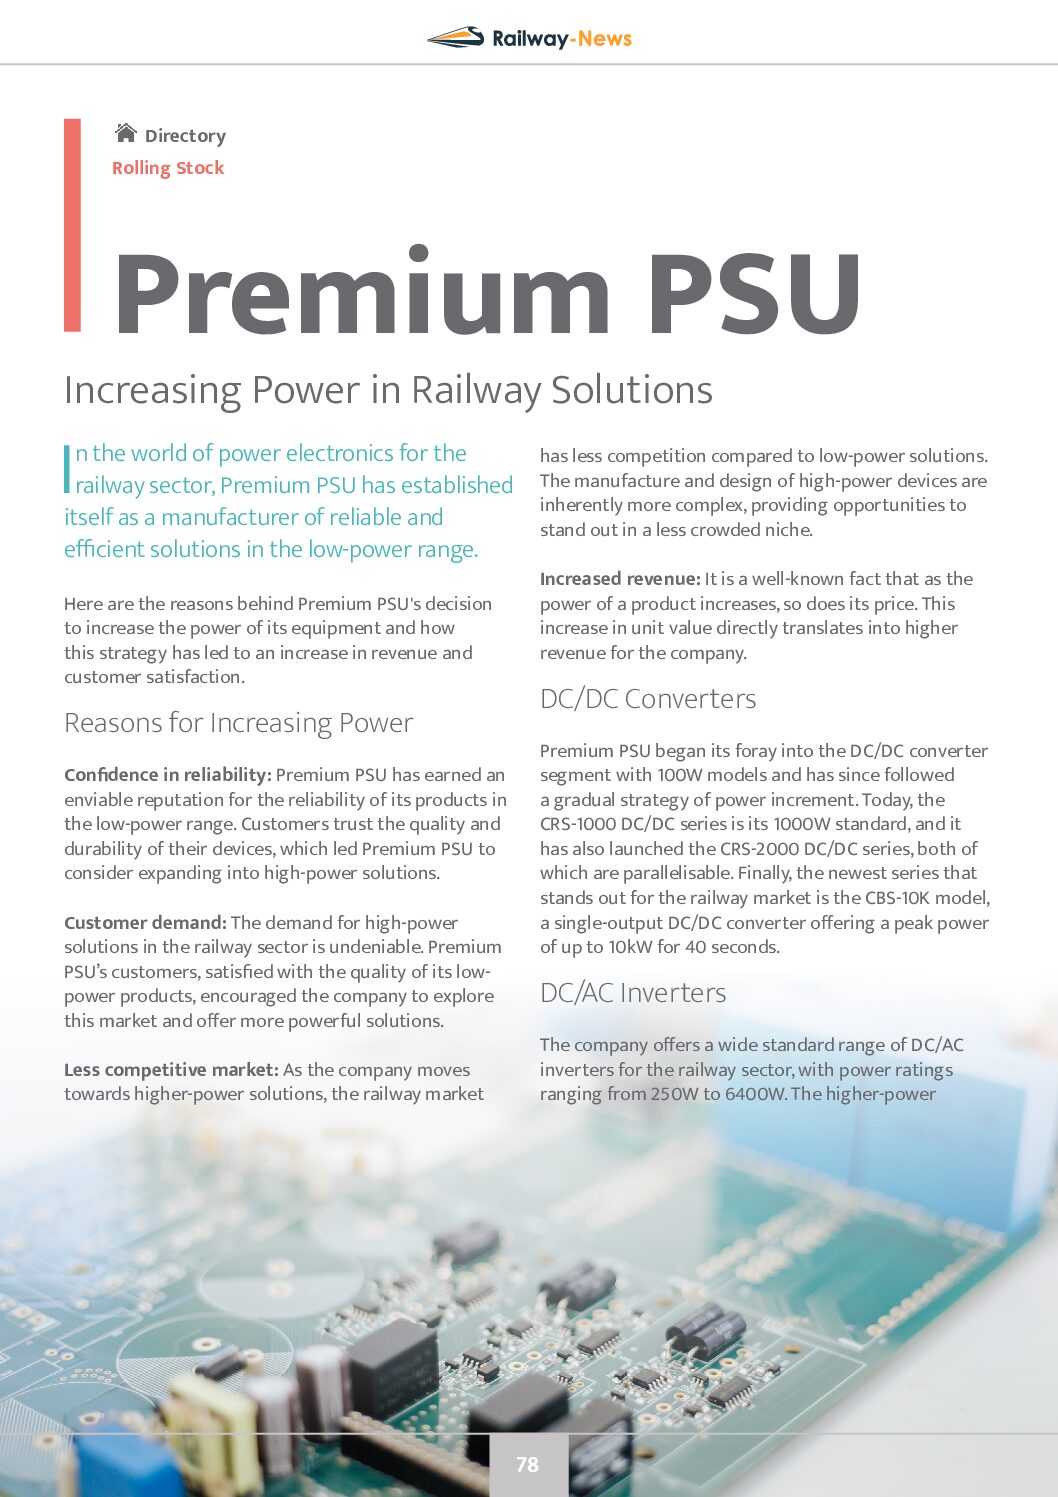 Increasing Power in Railway Solutions